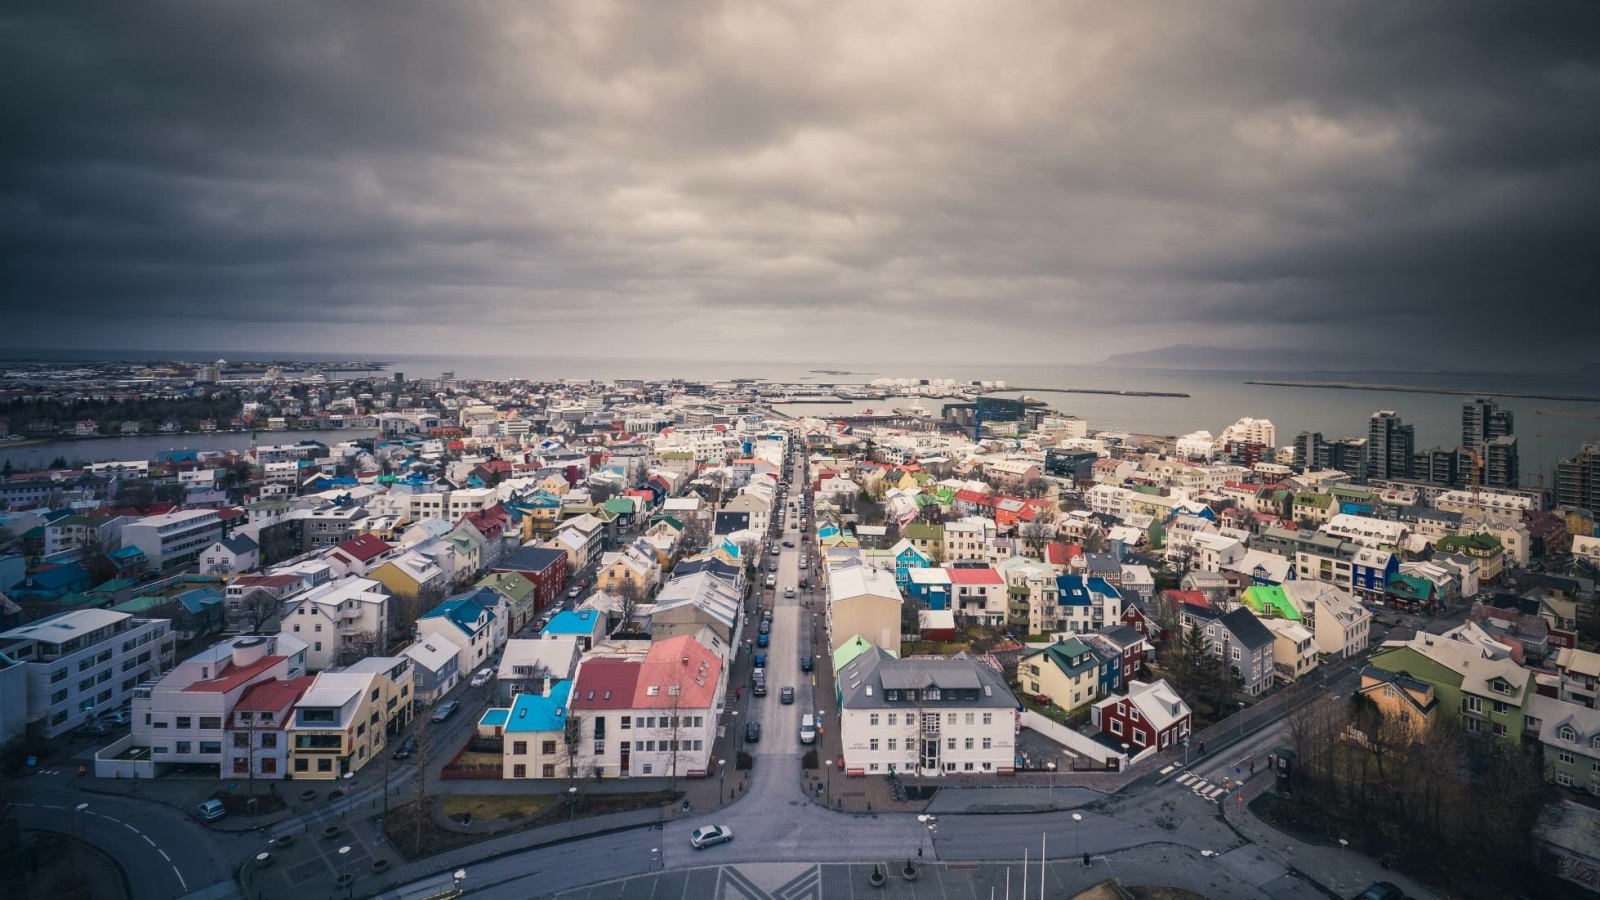 تعد آيسلندا الدولة الأكثر أمانًا على الإطلاق؛ حيث تحتل المركز الأول في المؤشر العالمي للسلام خلال العام الماضي 2016.